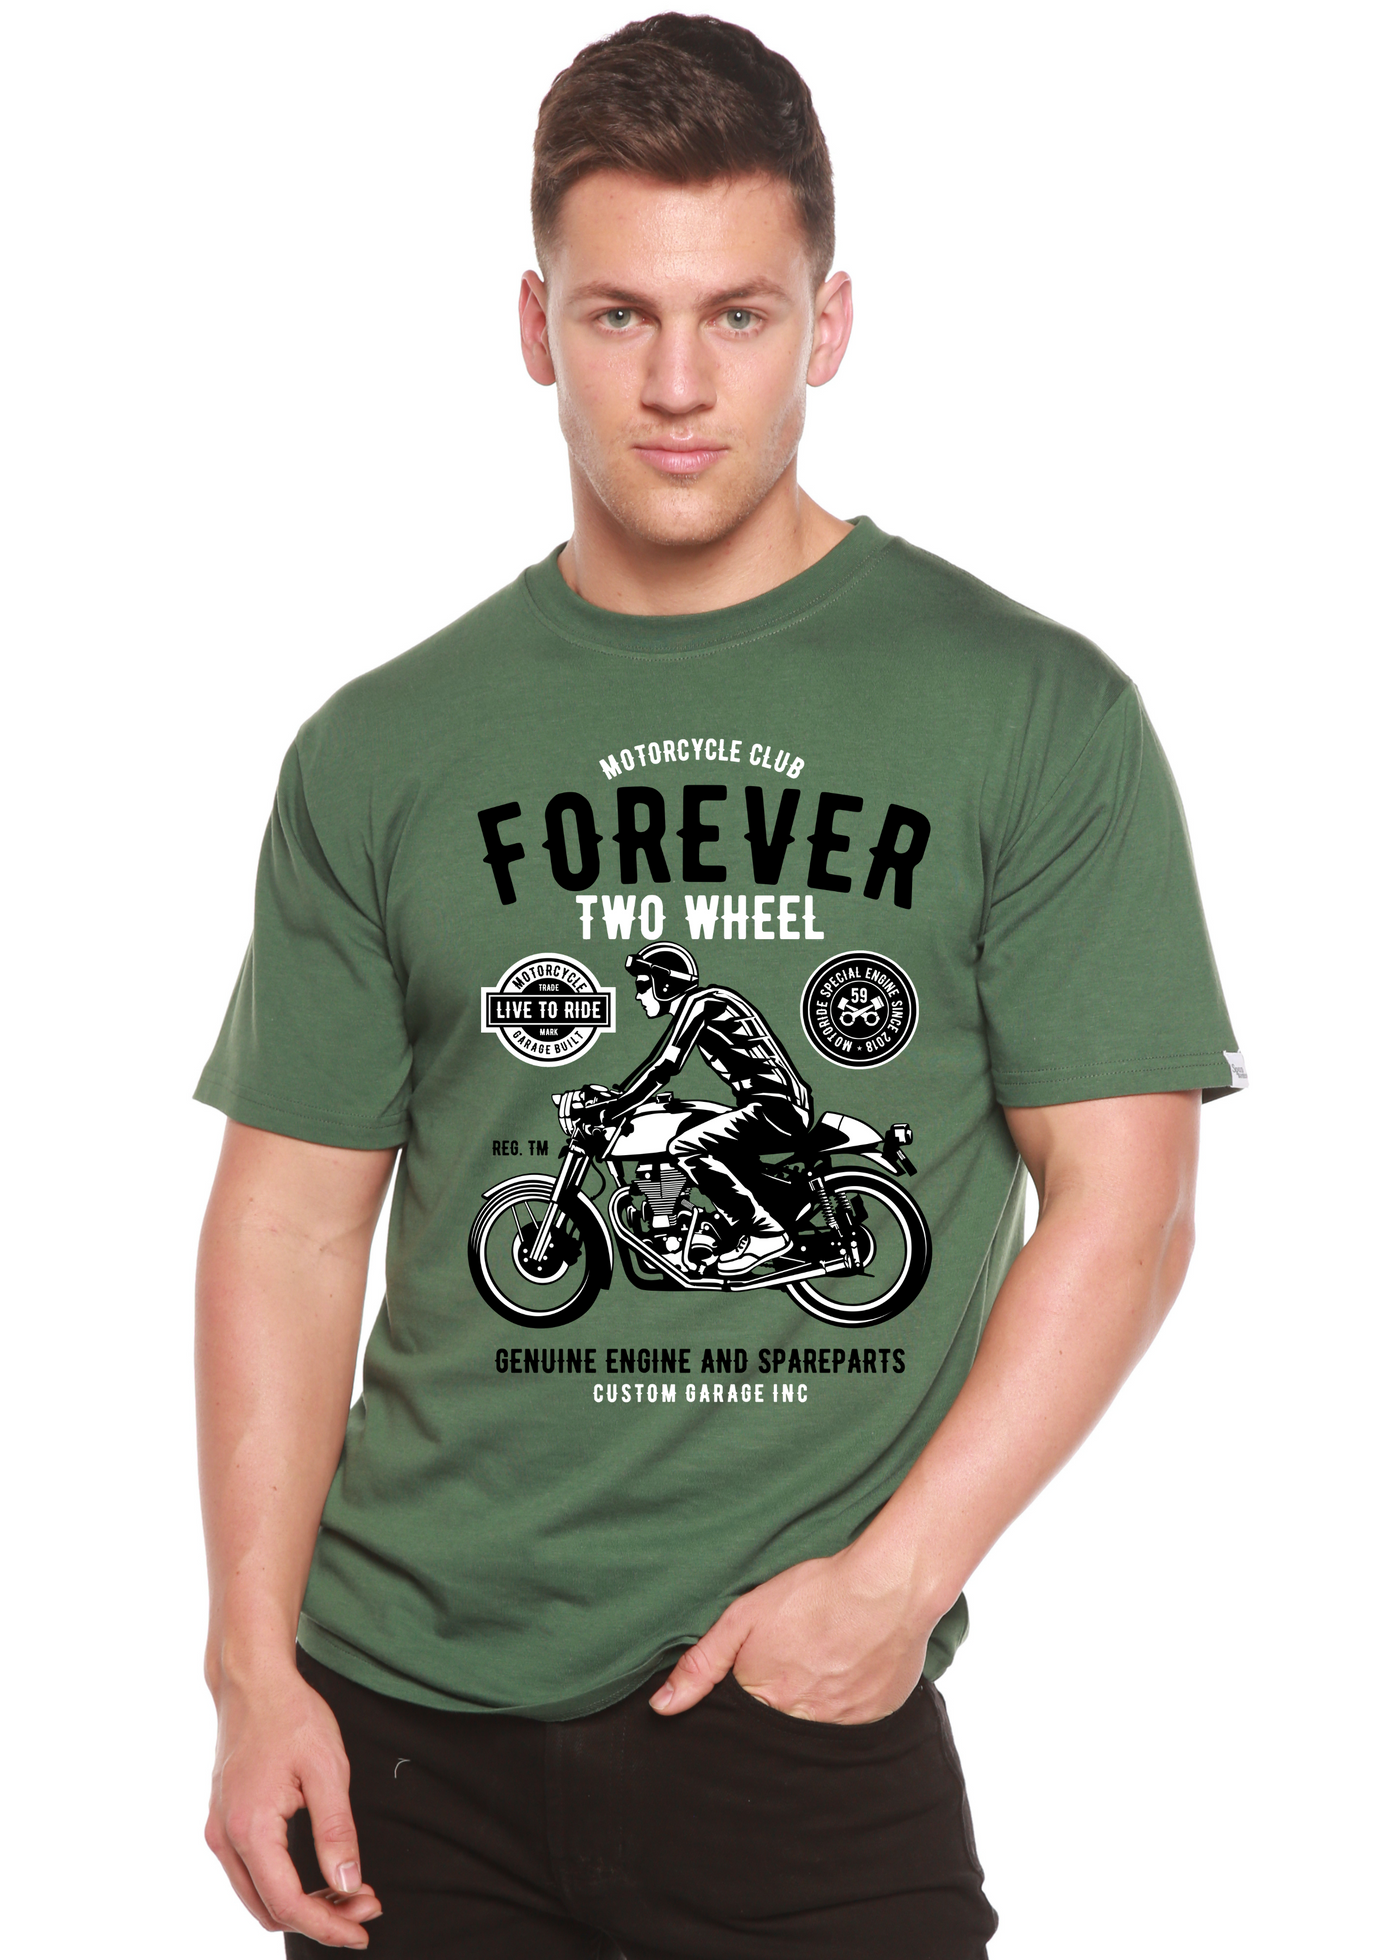 Forever Two Wheel men's bamboo tshirt pine green